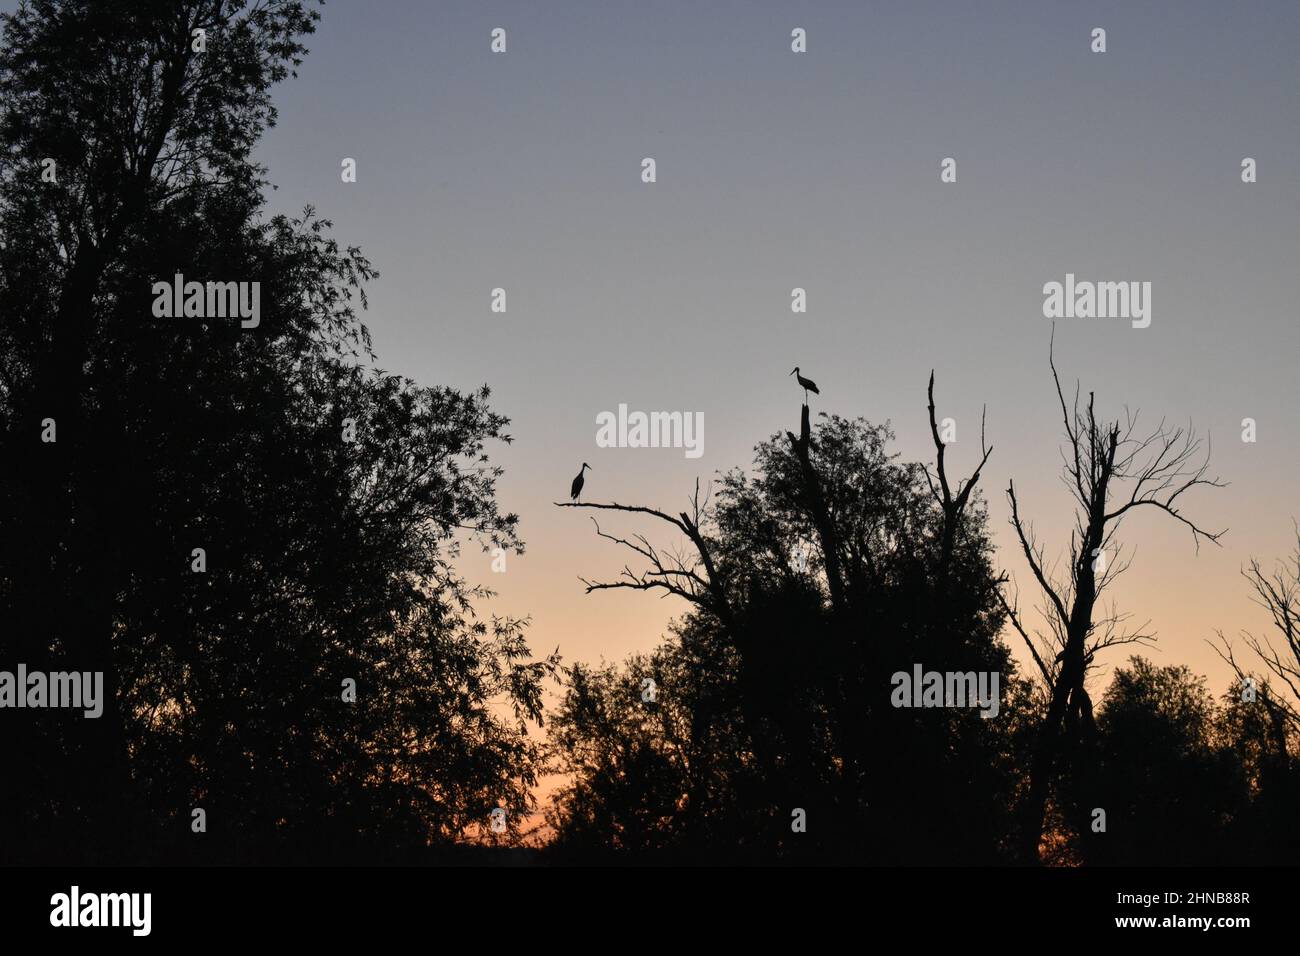 Störche auf Baum im Ried in der Abenddämmerung, Störche, Silhouette, Sonnenuntergang, Storche im Abendrot Stock Photo